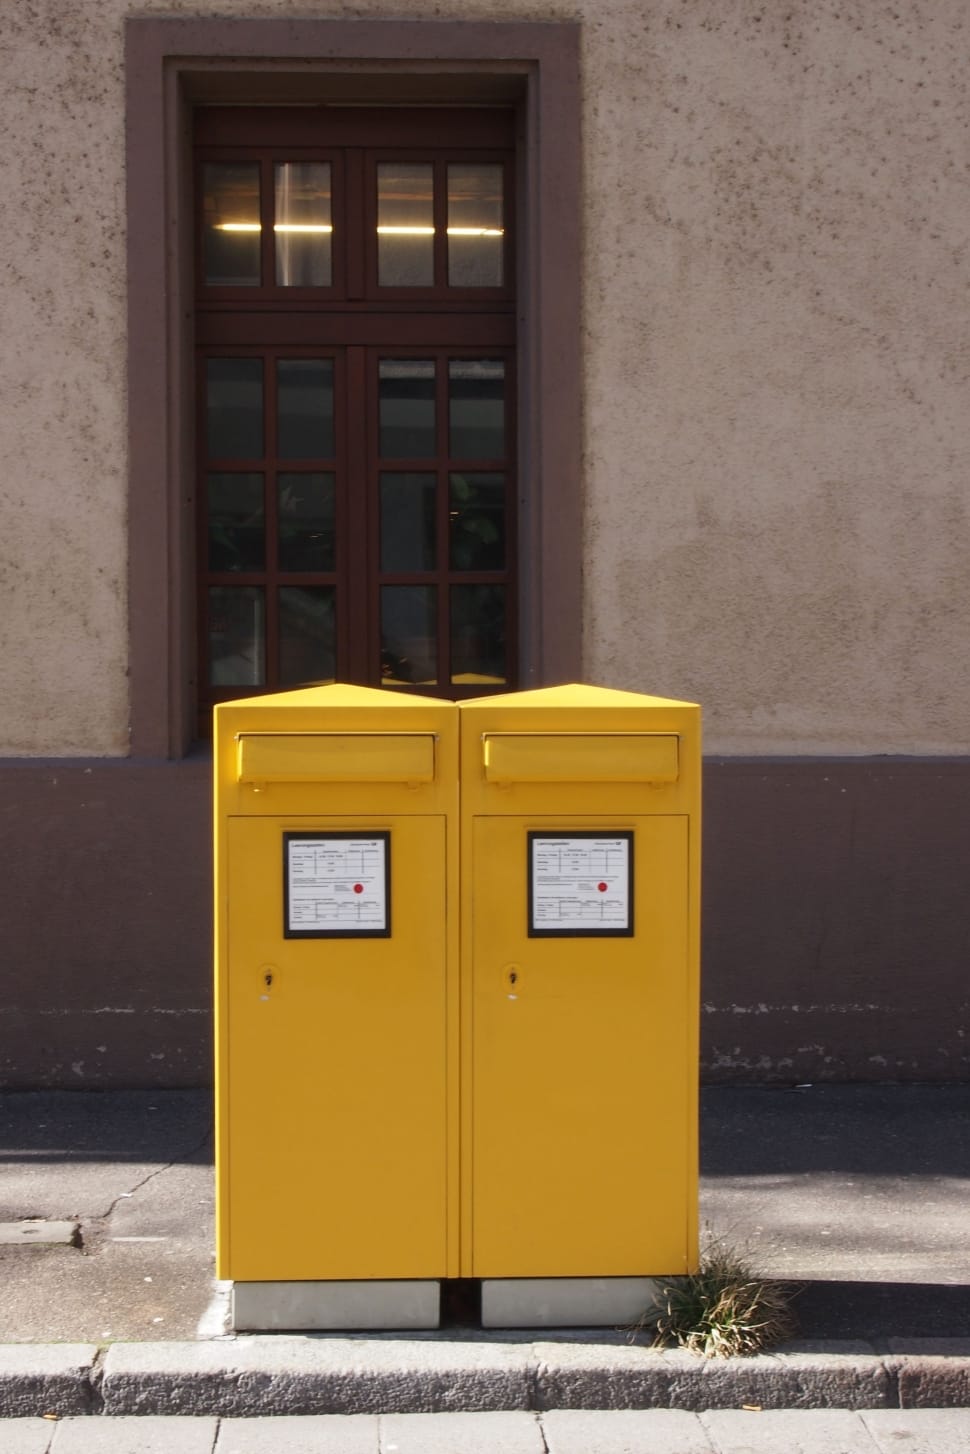 yellow trash bins on gray concrete road preview